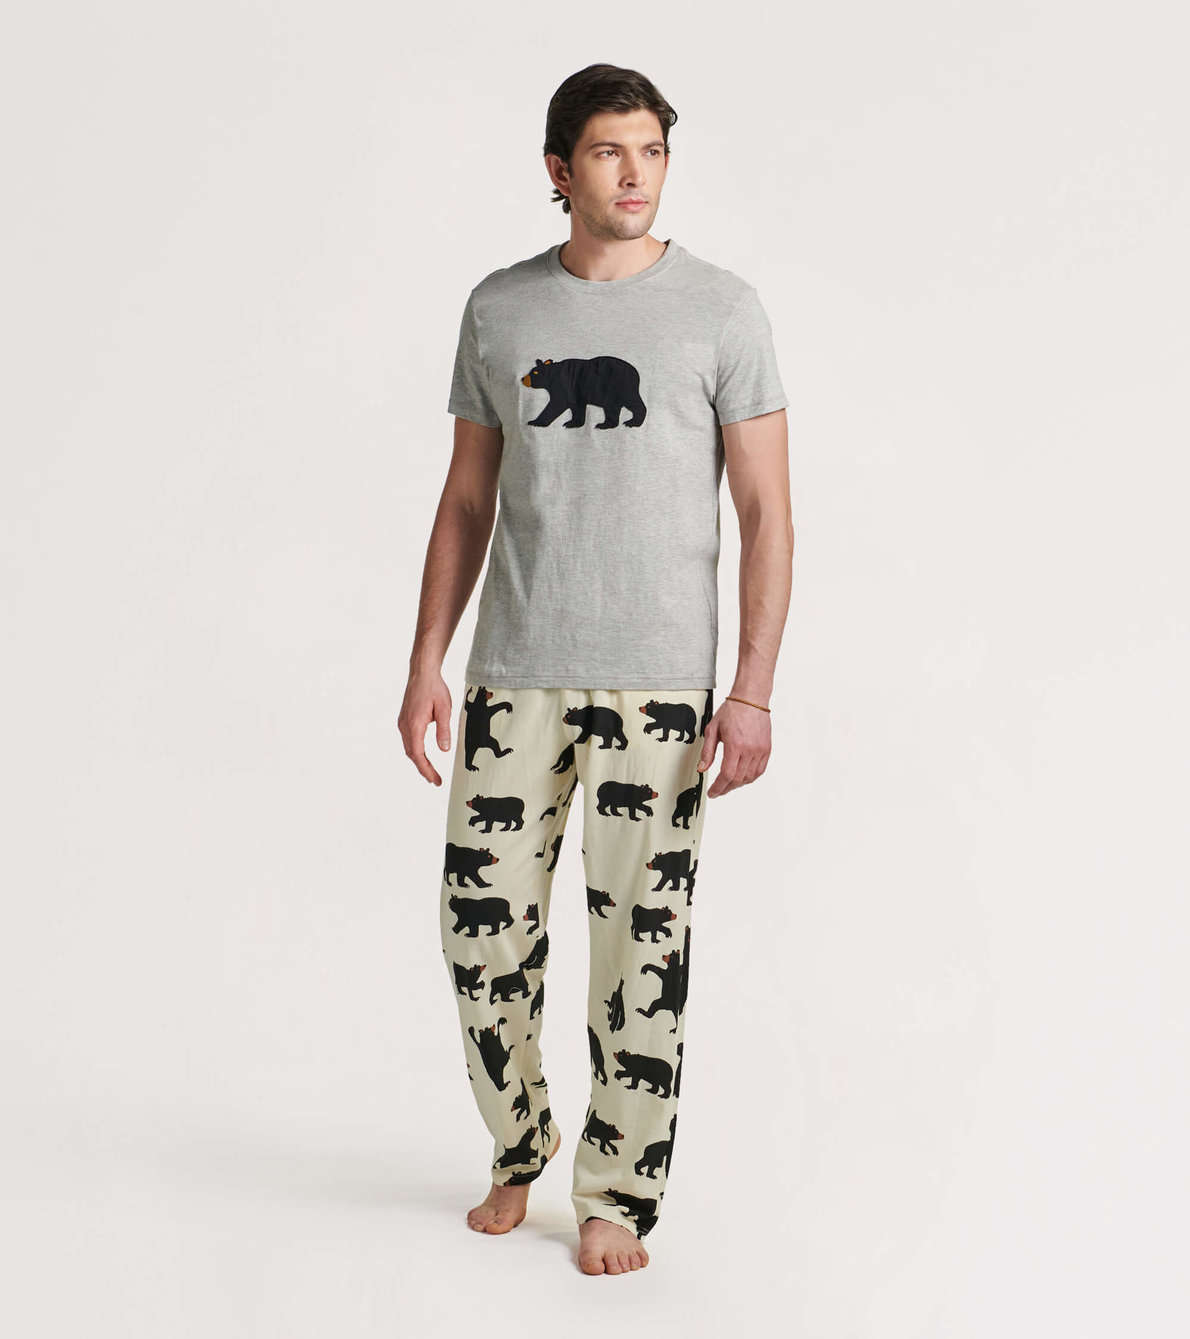 Agrandir l'image de Ensemble de t-shirt et pantalon interchangeables pour homme - Ours